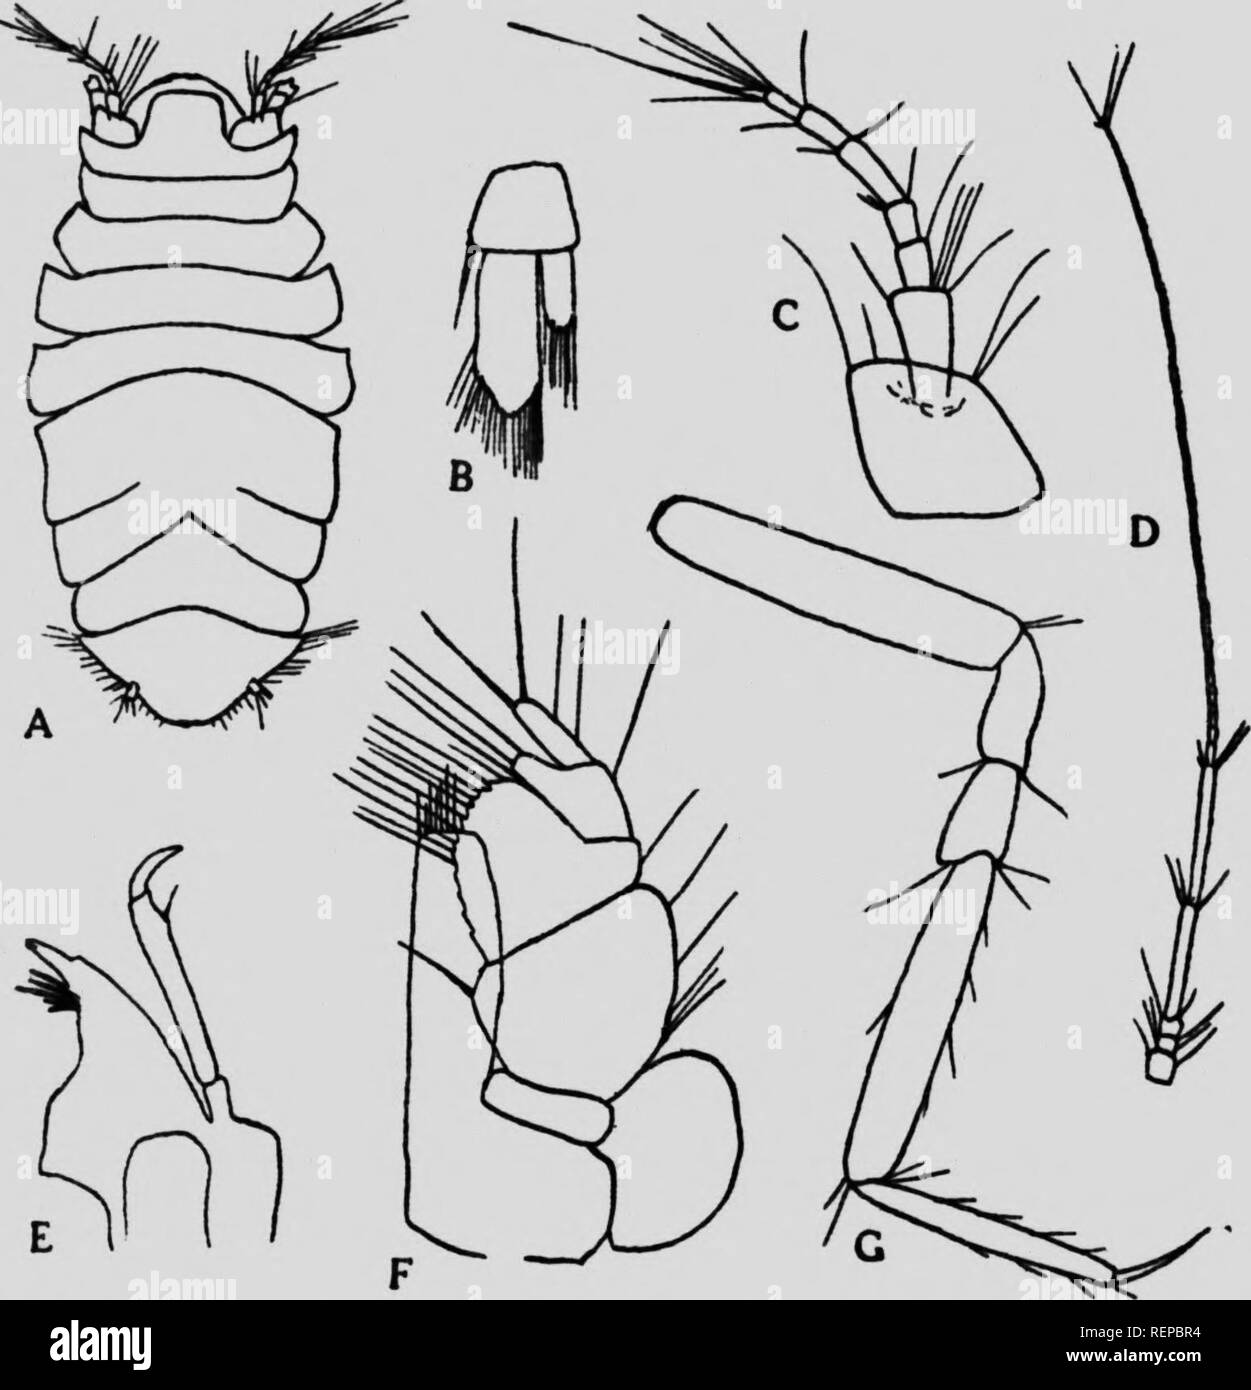 . Die isopoda auf die Bucht von Fundy [microform]. Crustacea; Isopodes; Isopoda; CrustacÃ©s. Wallace: Der isopoda auf die Bucht von Fundy 39 Artikel und ein multiarticulate" igelluni tvic tl Länge des Blütenstandsstiels, die gesamte Antenne eing zweimal a-Joi.^ als der Körper. Der thorax besteht aus 'k verschiedene e^, die Fünfte zeigt Anzeichen einer subdi/ibion â.) y-Nähte, die erreichen. Fr?Â"^^""&gt;"&lt;""""" (G. O.&amp; rs); (A), weiblich, dorsalansicht, z 40; (B). uropod. x160 ICH DIE '^ rf"'^^""""} ^-&lt; D) 'Â"Â" Â" "d Antenne, x40; (E), Unterkiefer, Stockfoto